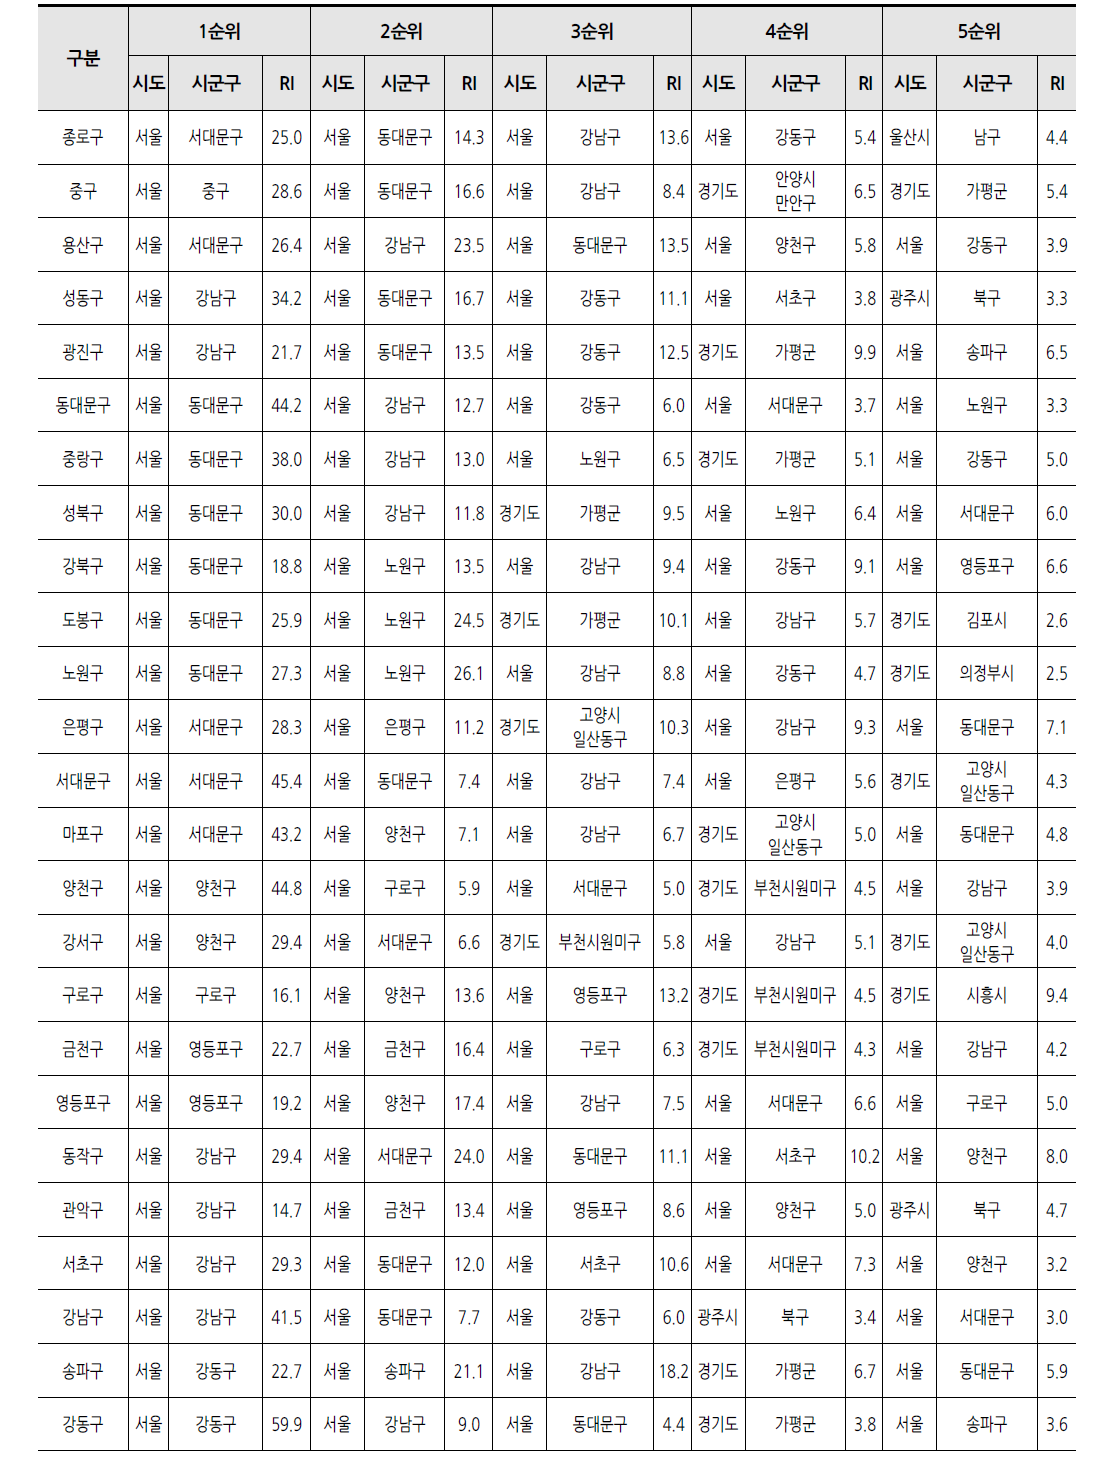 서울 시군구별 자기지역중심 한방입원의료서비스 유출 현황(입원일수 기준) (단위 : %)